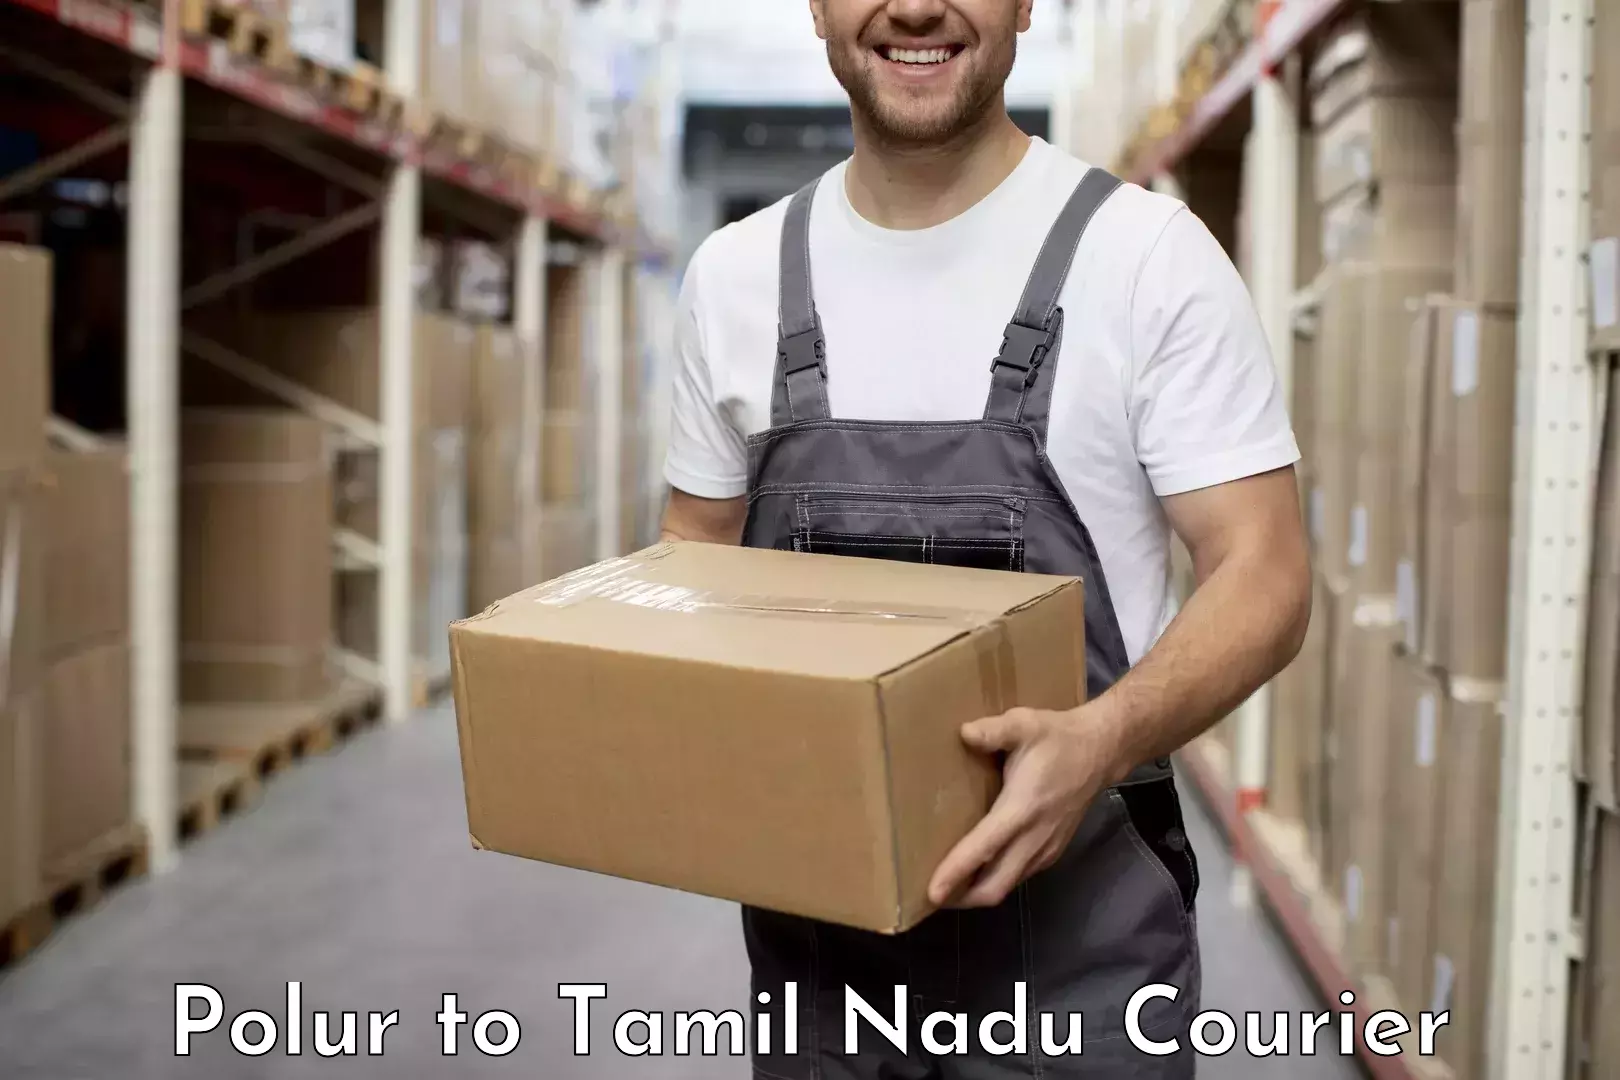 Quality courier partnerships Polur to Chennai